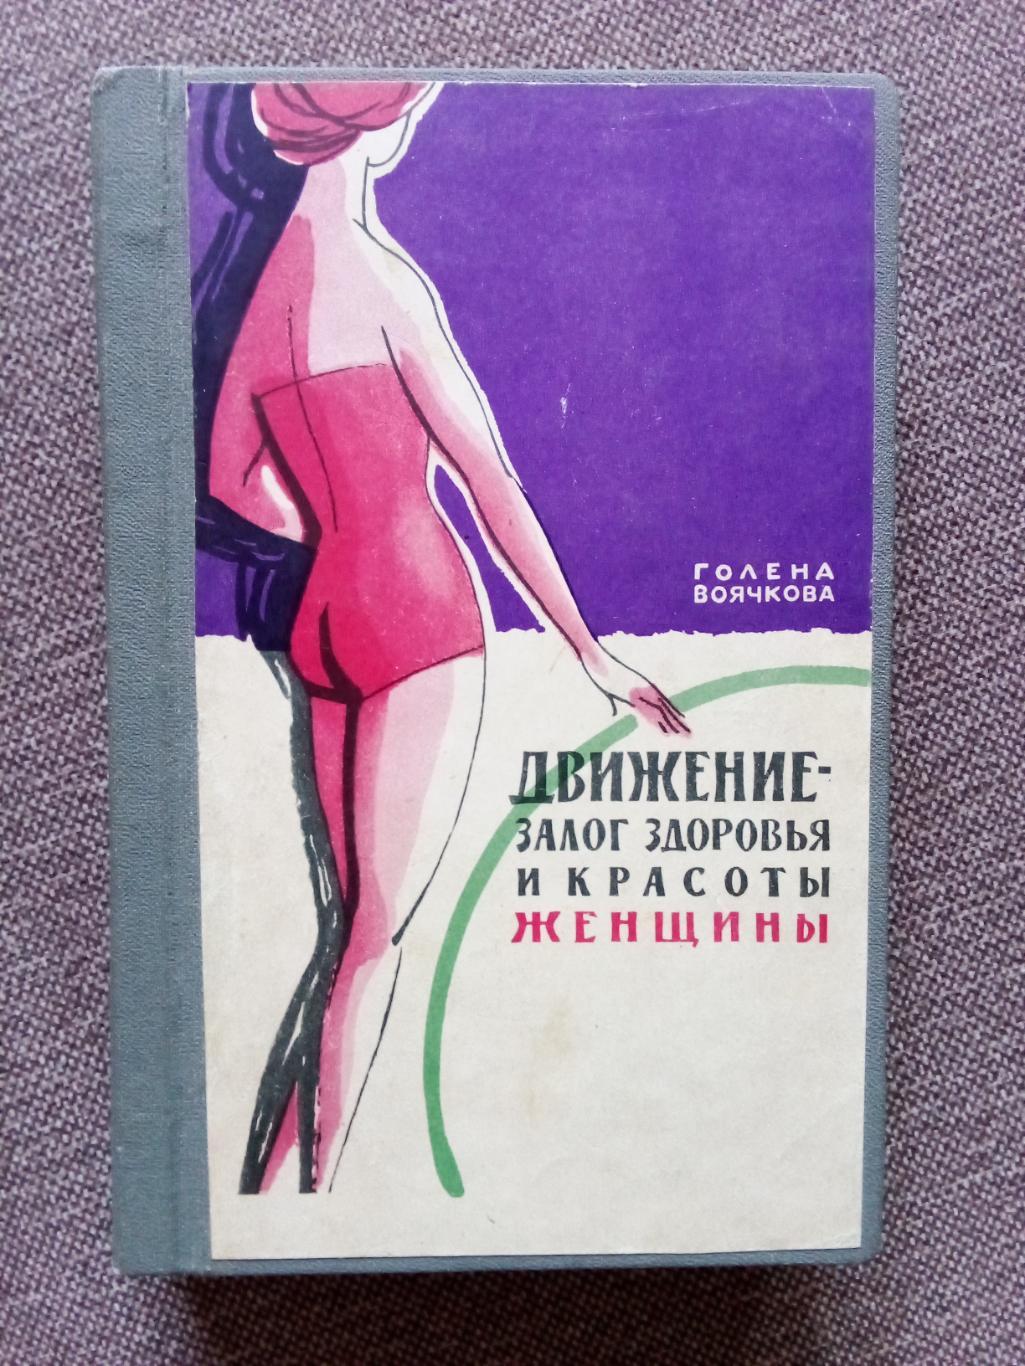 Голена Воячкова - Движение-залог здоровья и красоты женщины 1962 г. ФиС